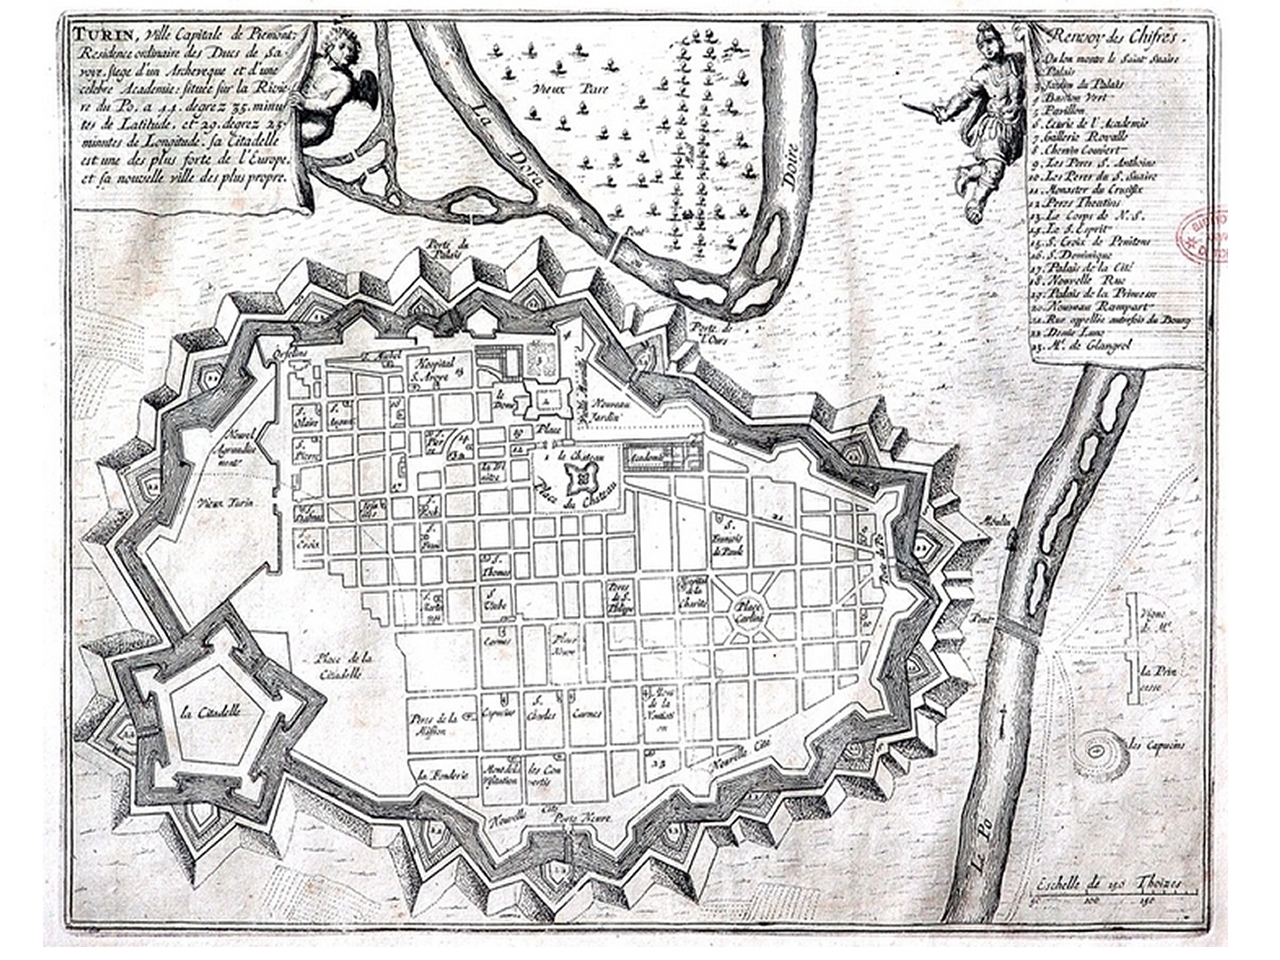 Pianta topografica della città di Torino, 1704